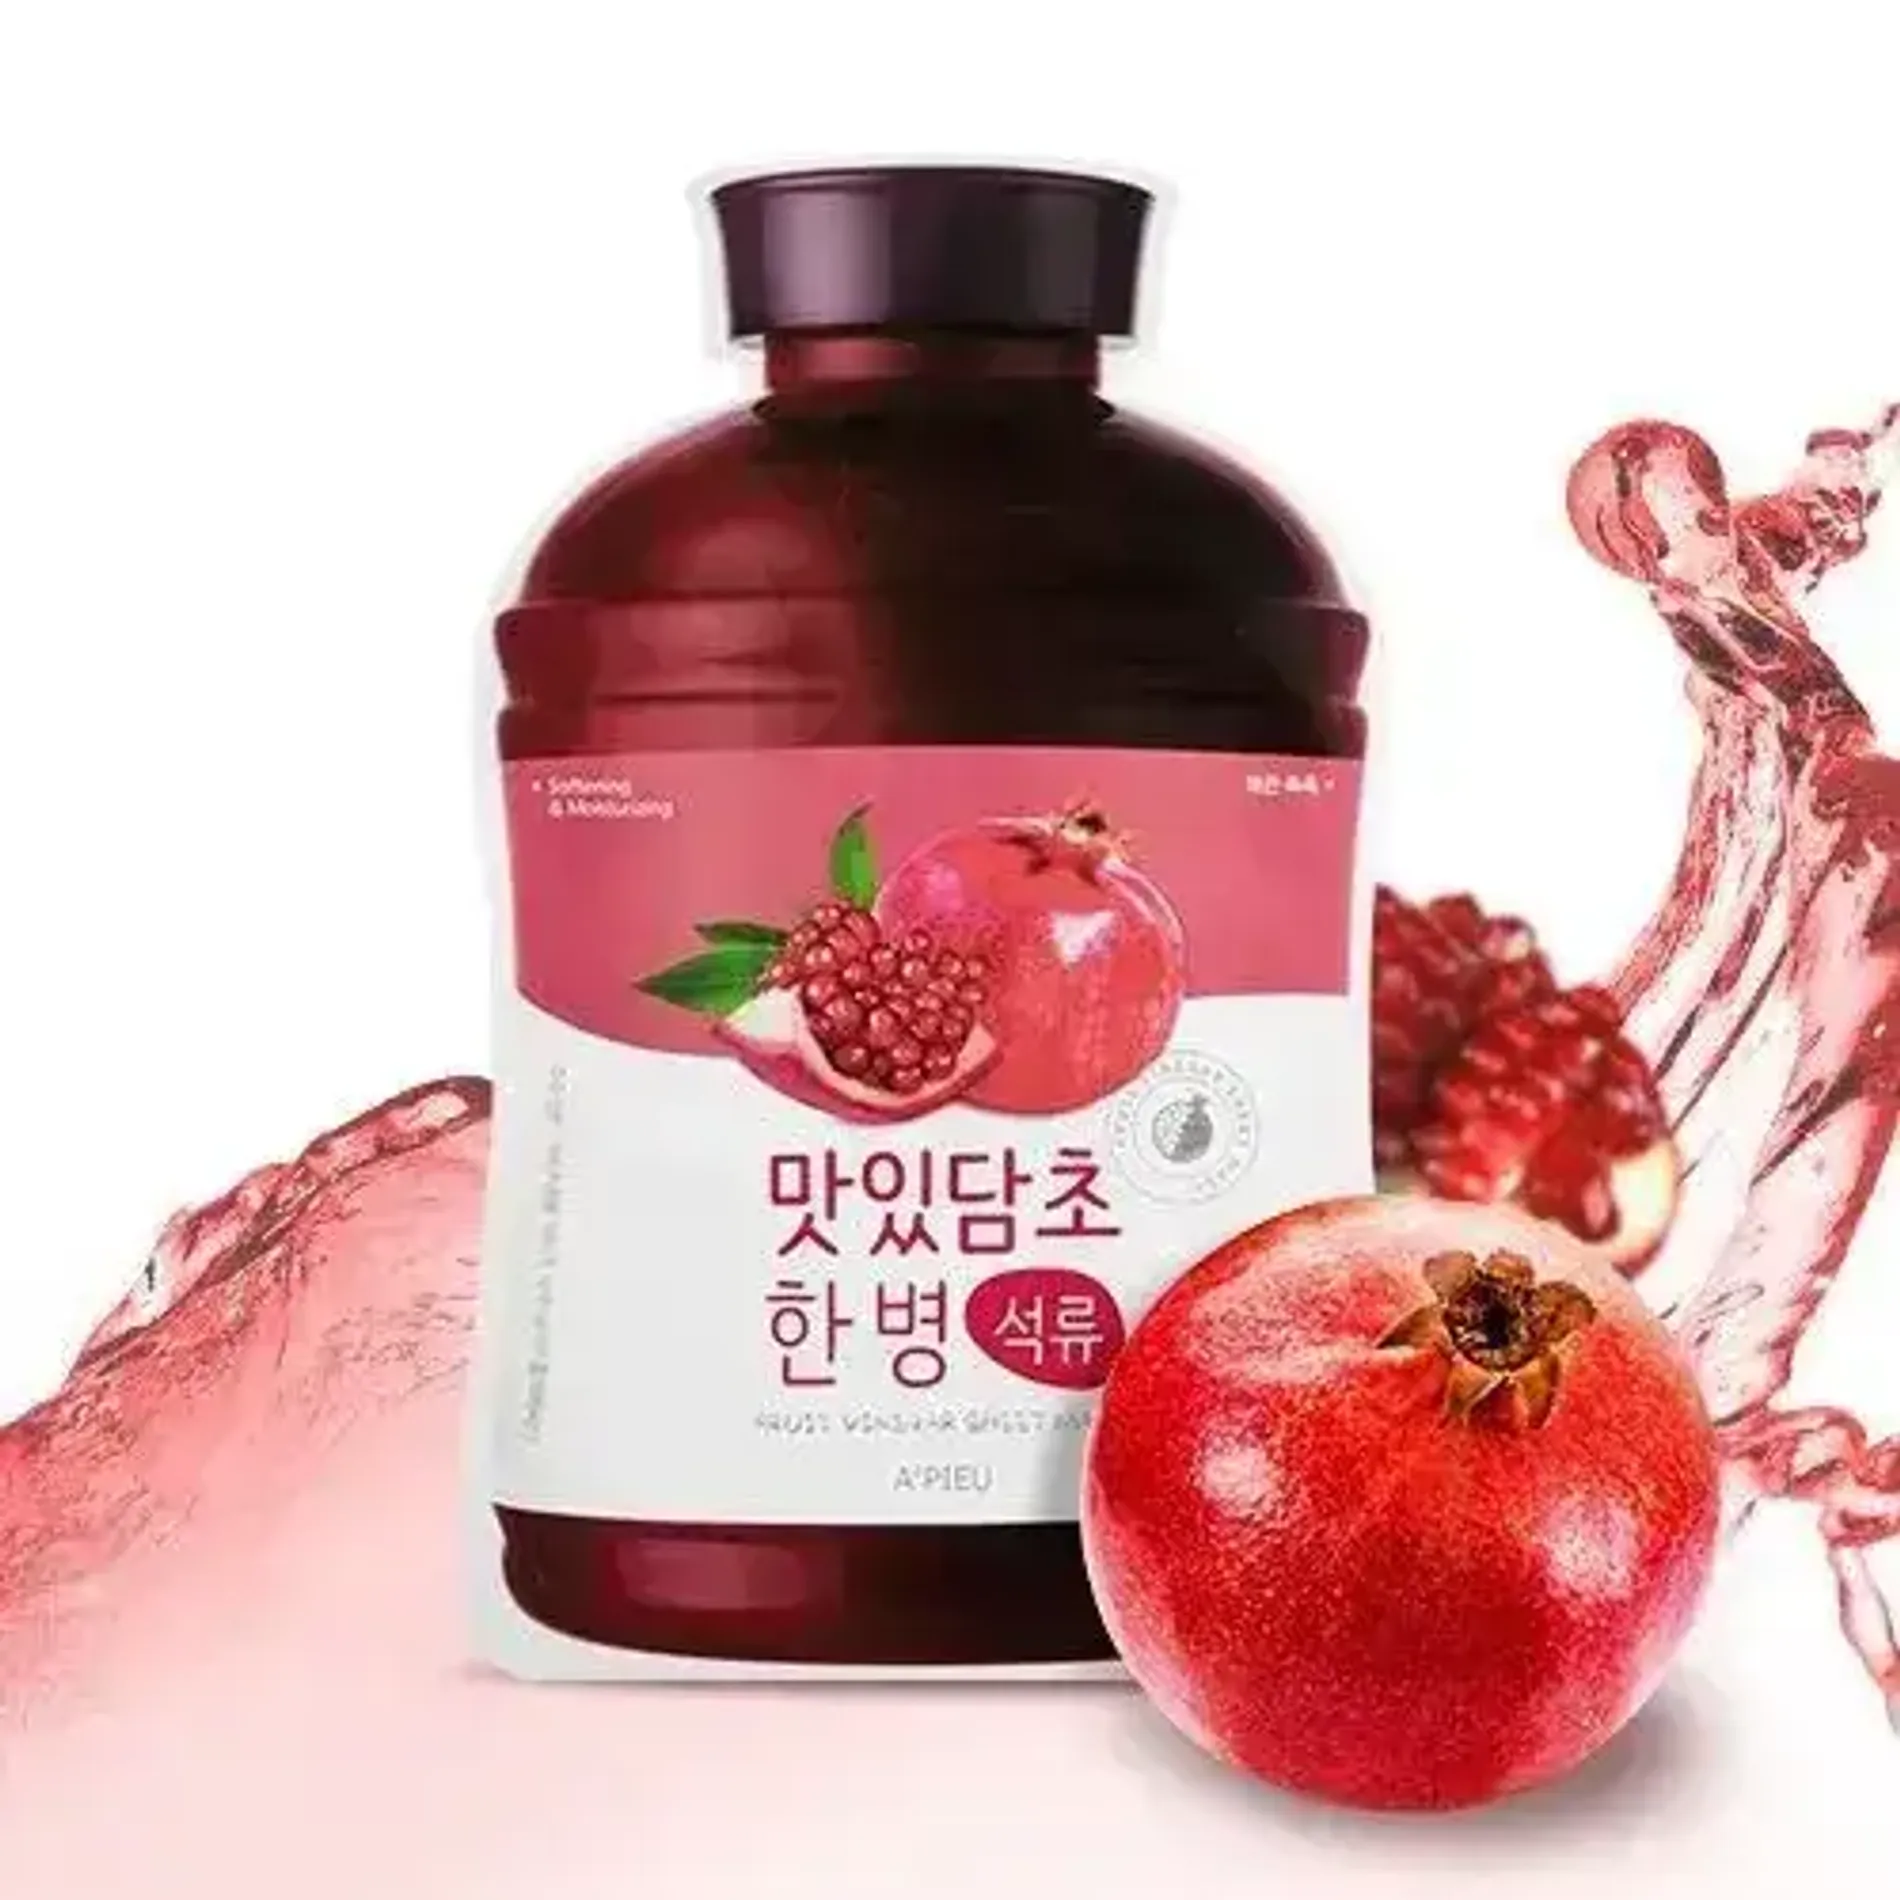 mat-na-a-pieu-fruit-vinegar-sheet-mask-pomegranate-1